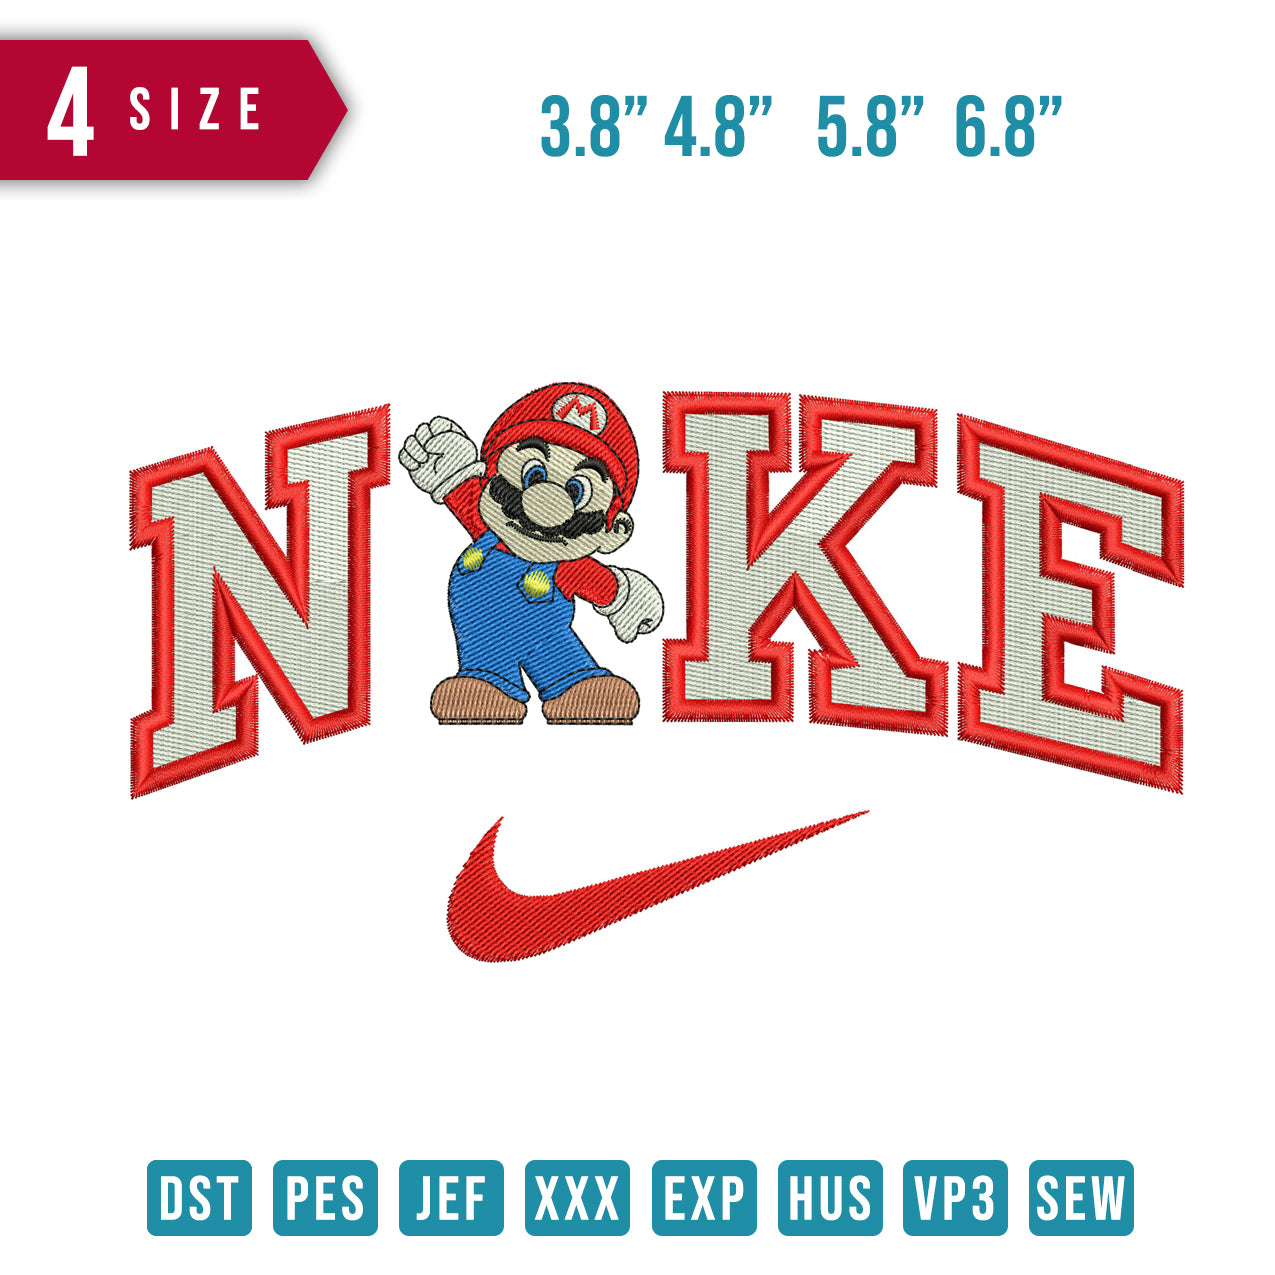 Nike Mario